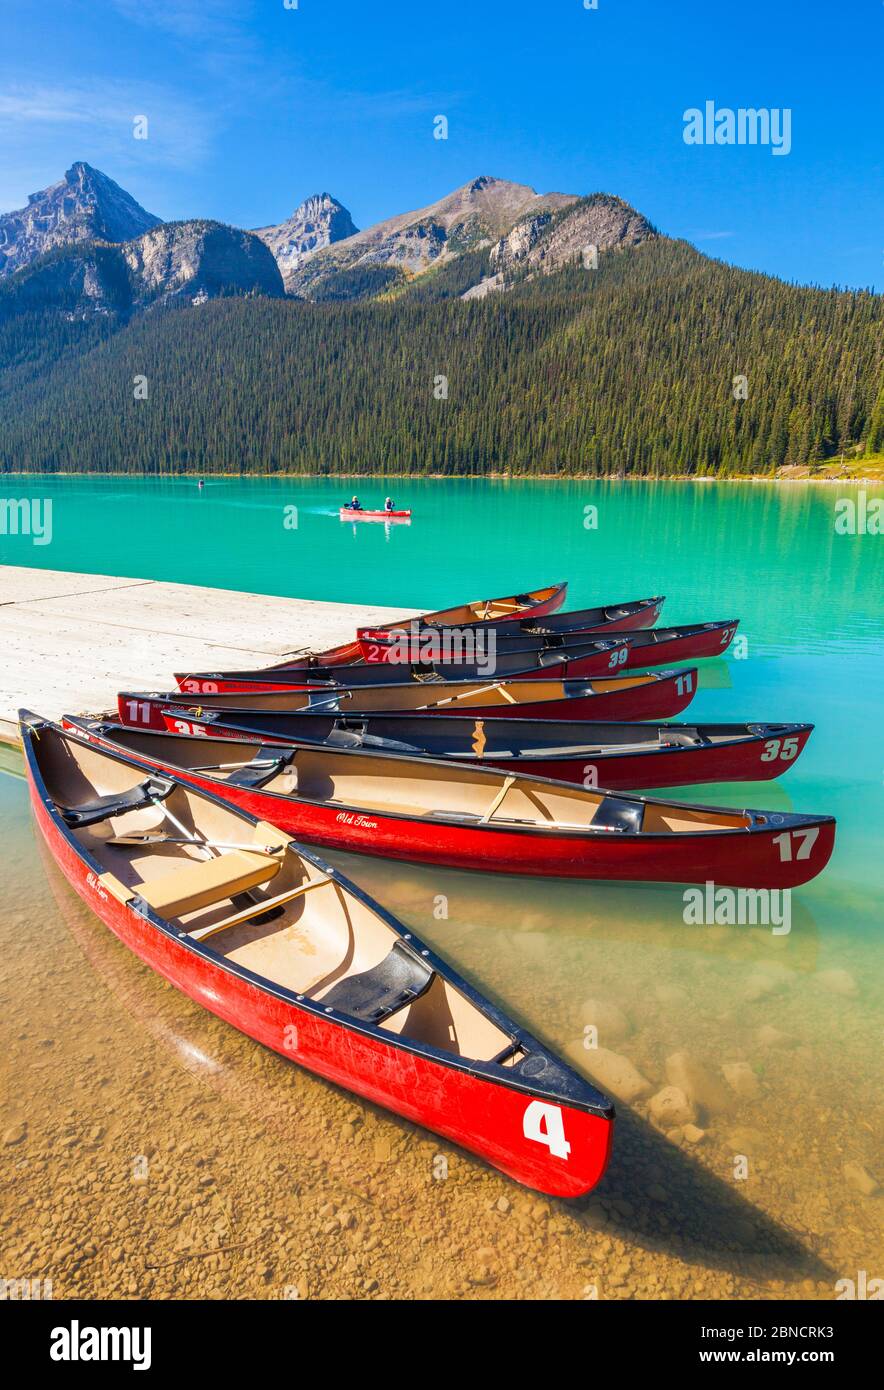 Lake Louise peut louer des canoës rouges dans le parc national de Lake Louise Banff Alberta Canadian Rockies Canada Banque D'Images